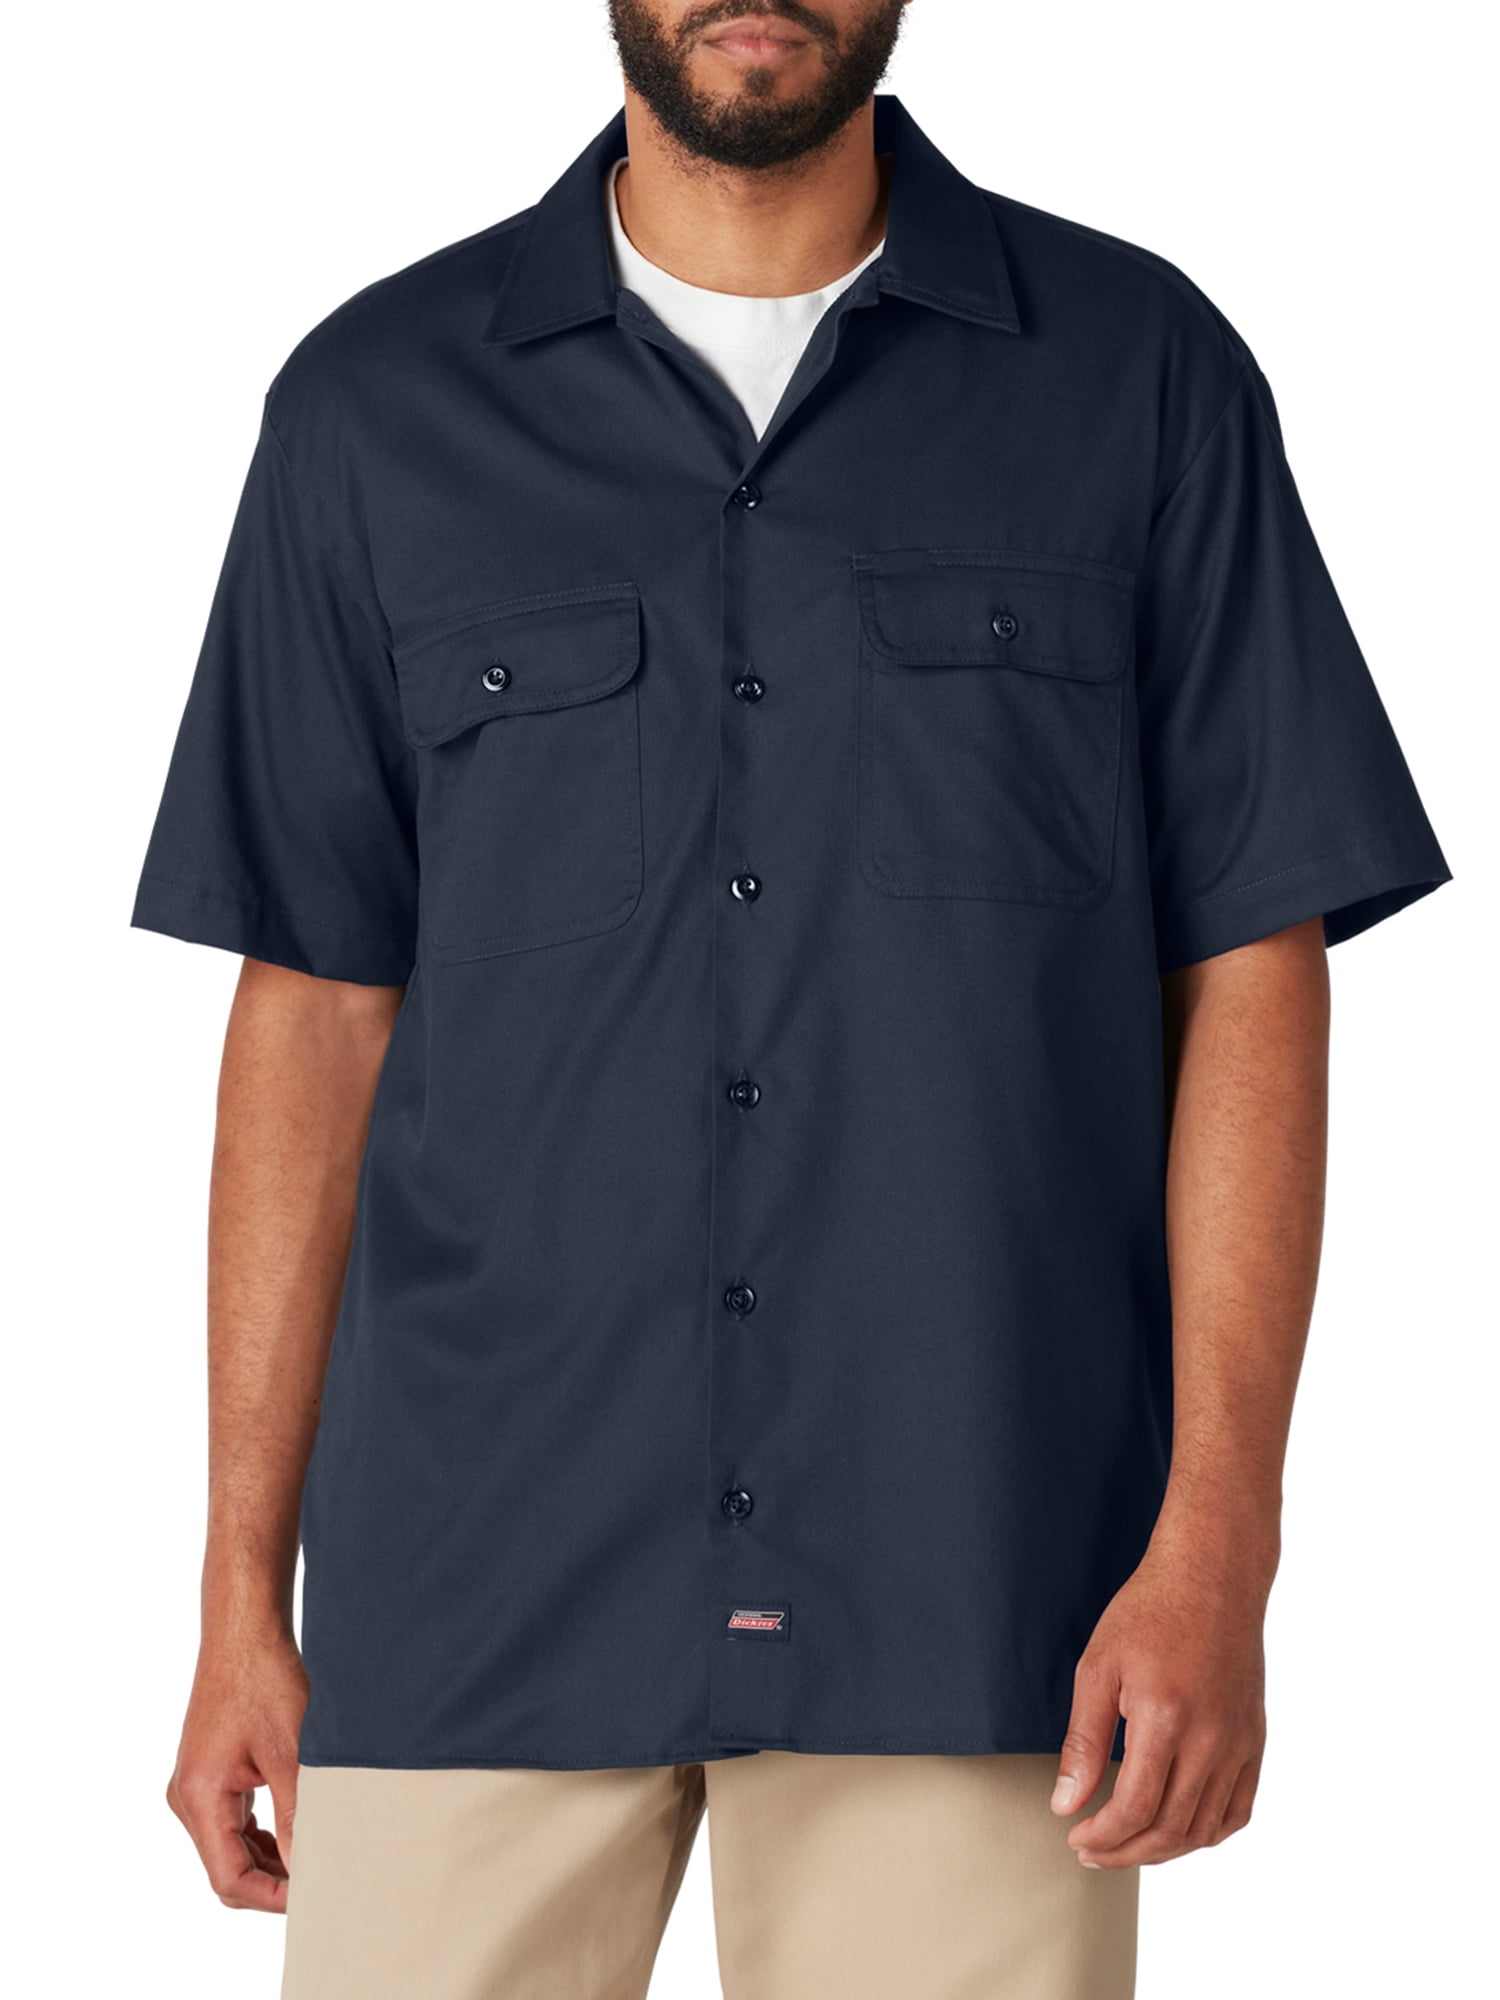 Dickies Men's Flex Short Sleeve Work Shirt Temp Control Cooling - 1 Each